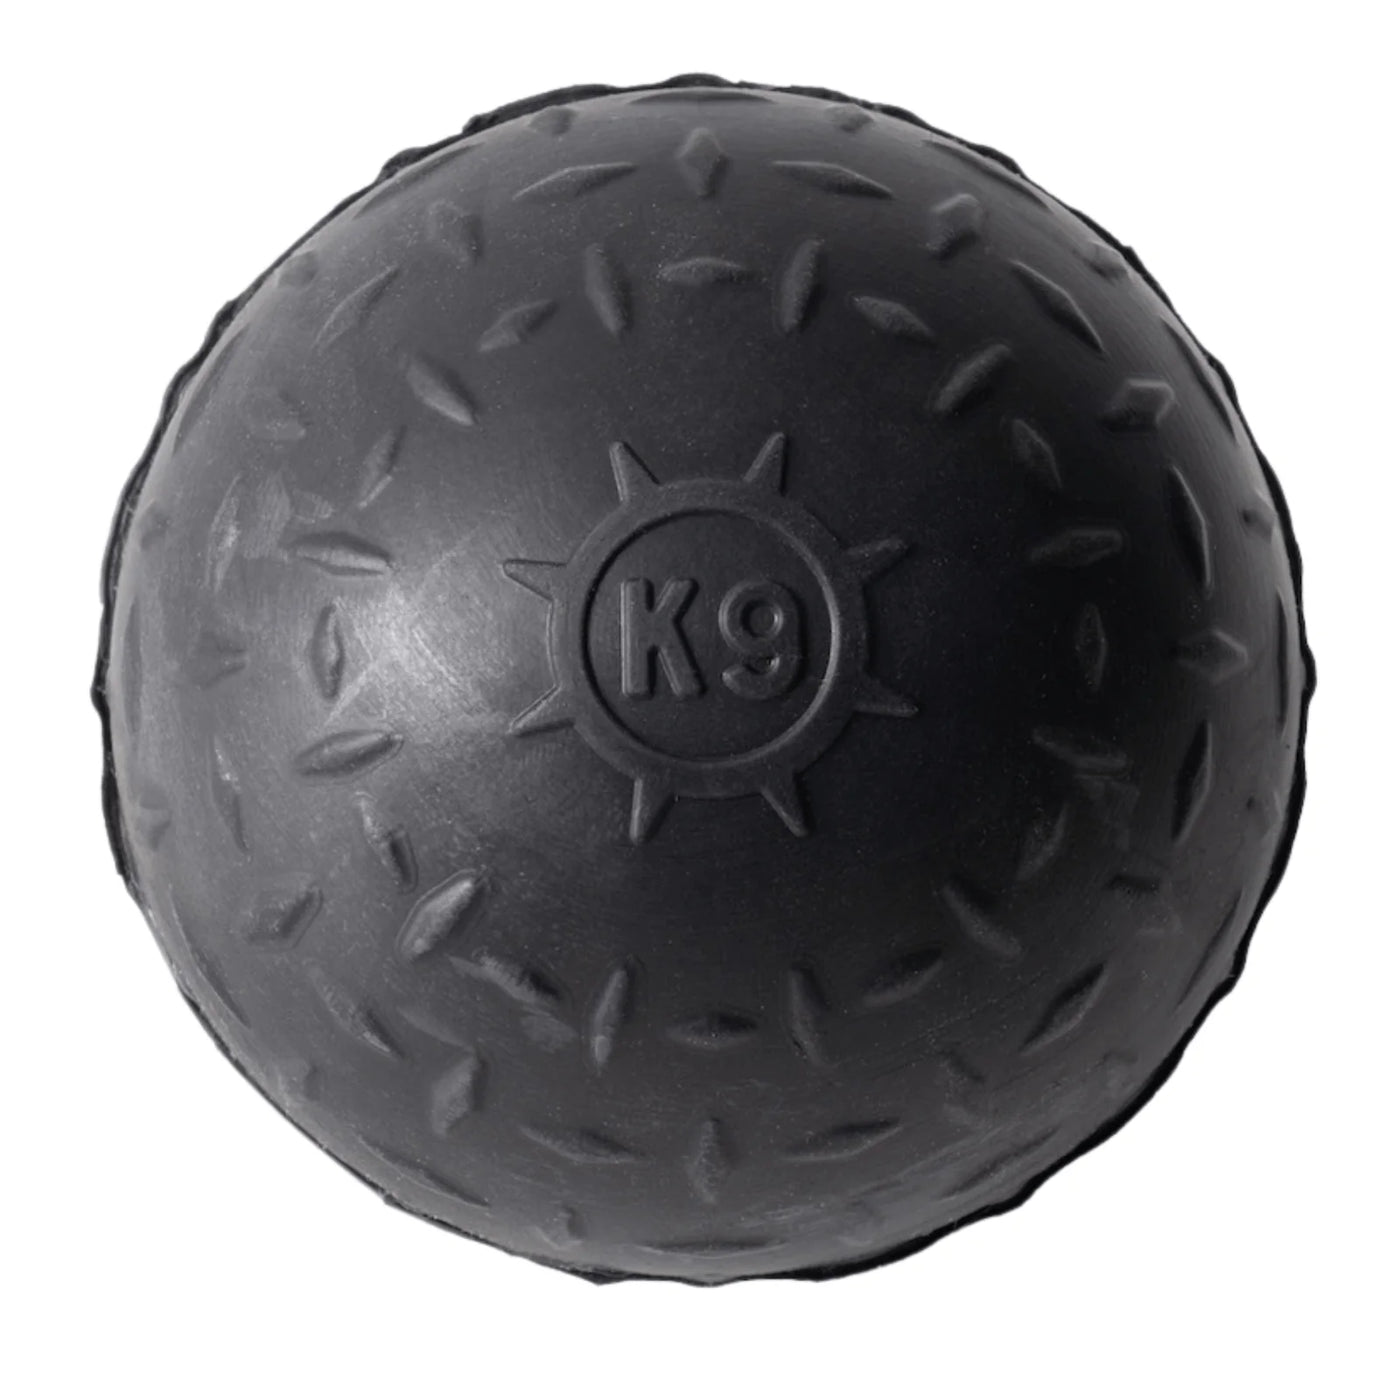 Monster K9 Solid Ball *